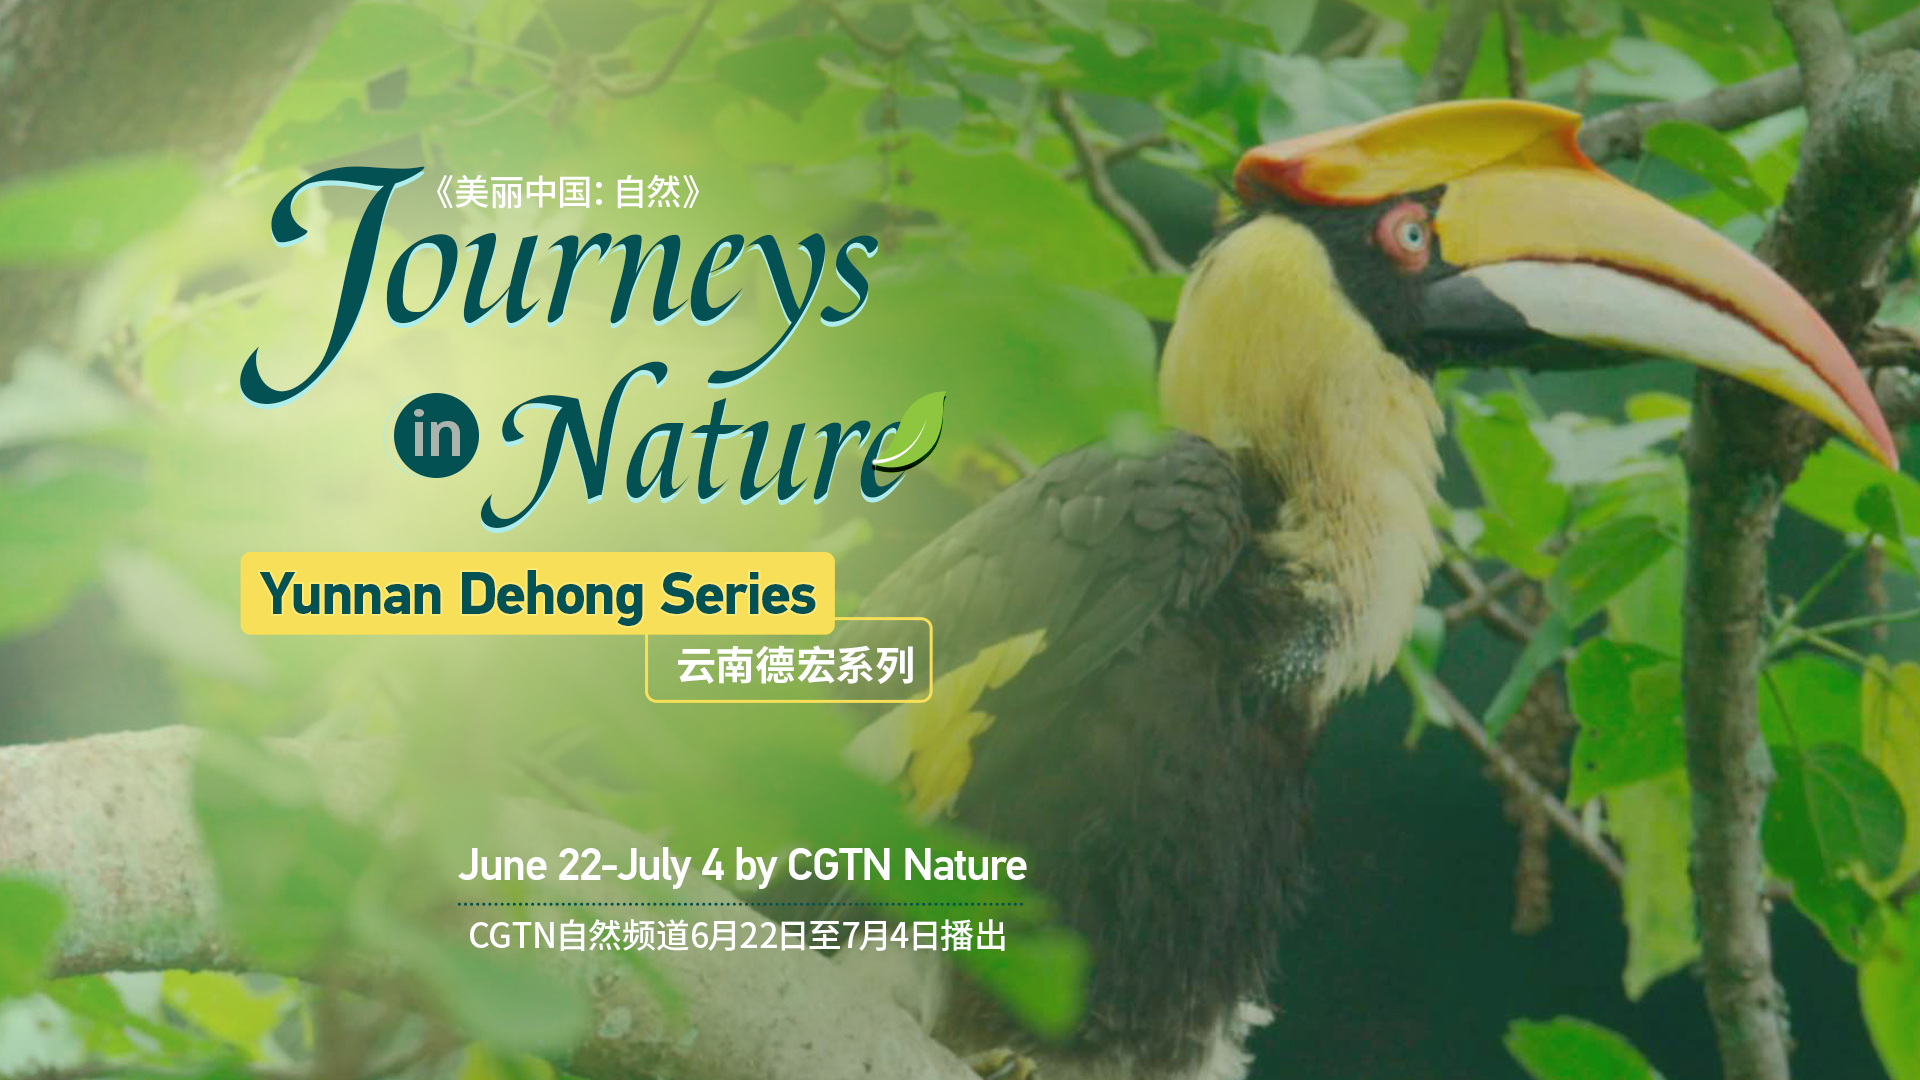 Yunnan Dehong Series is coming June 22